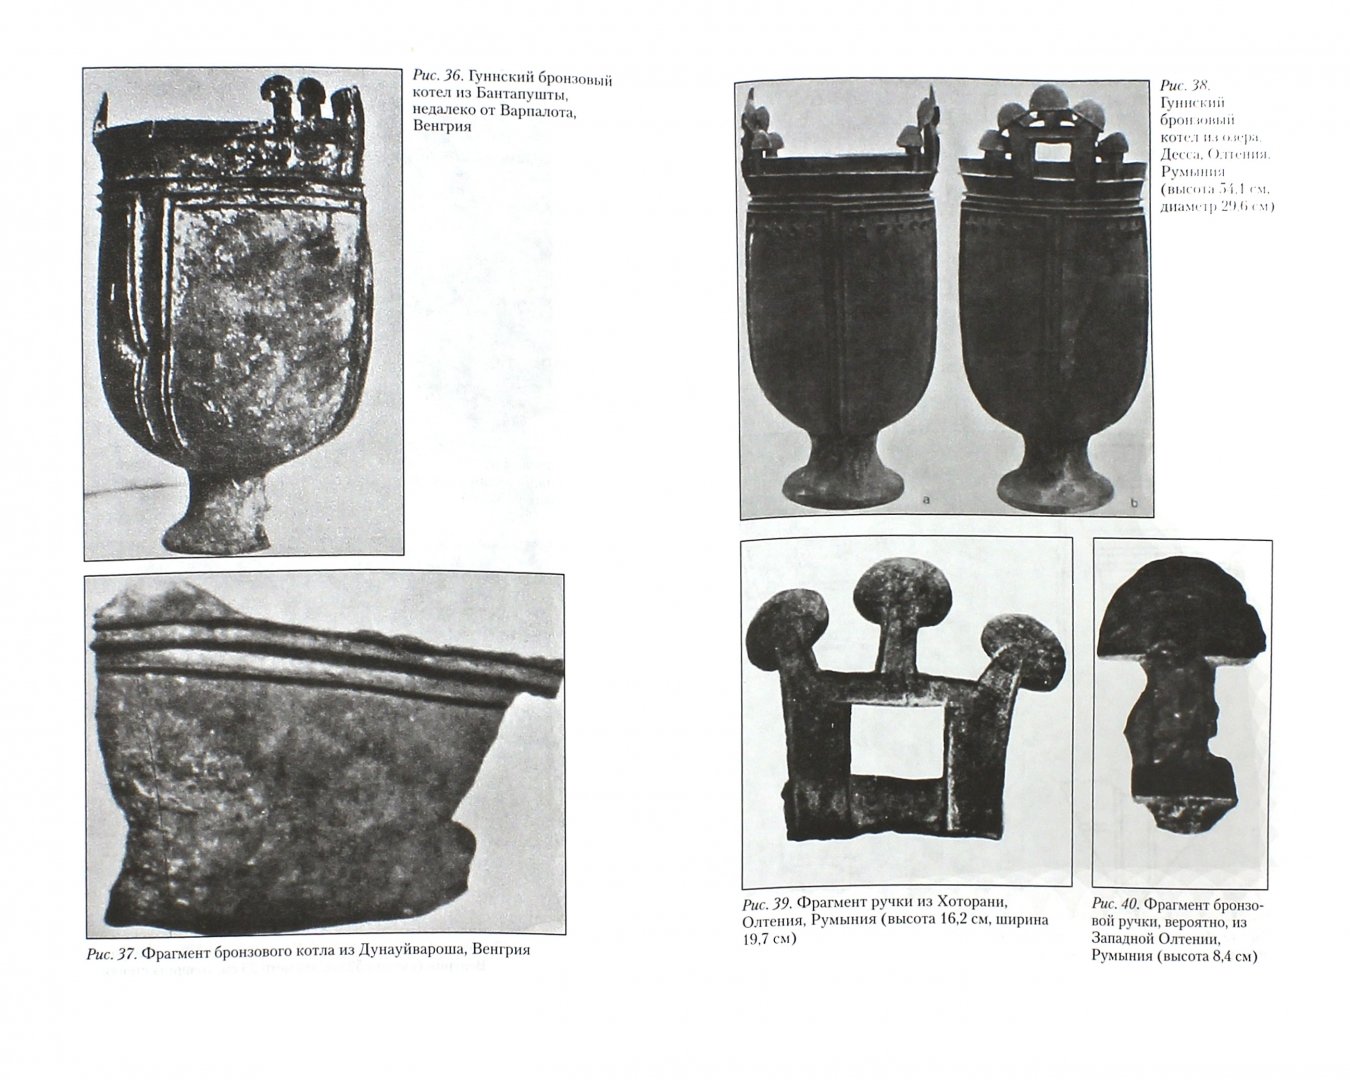 Иллюстрация 1 из 6 для История и культура гуннов - Отто Менхен-Хельфен | Лабиринт - книги. Источник: Лабиринт